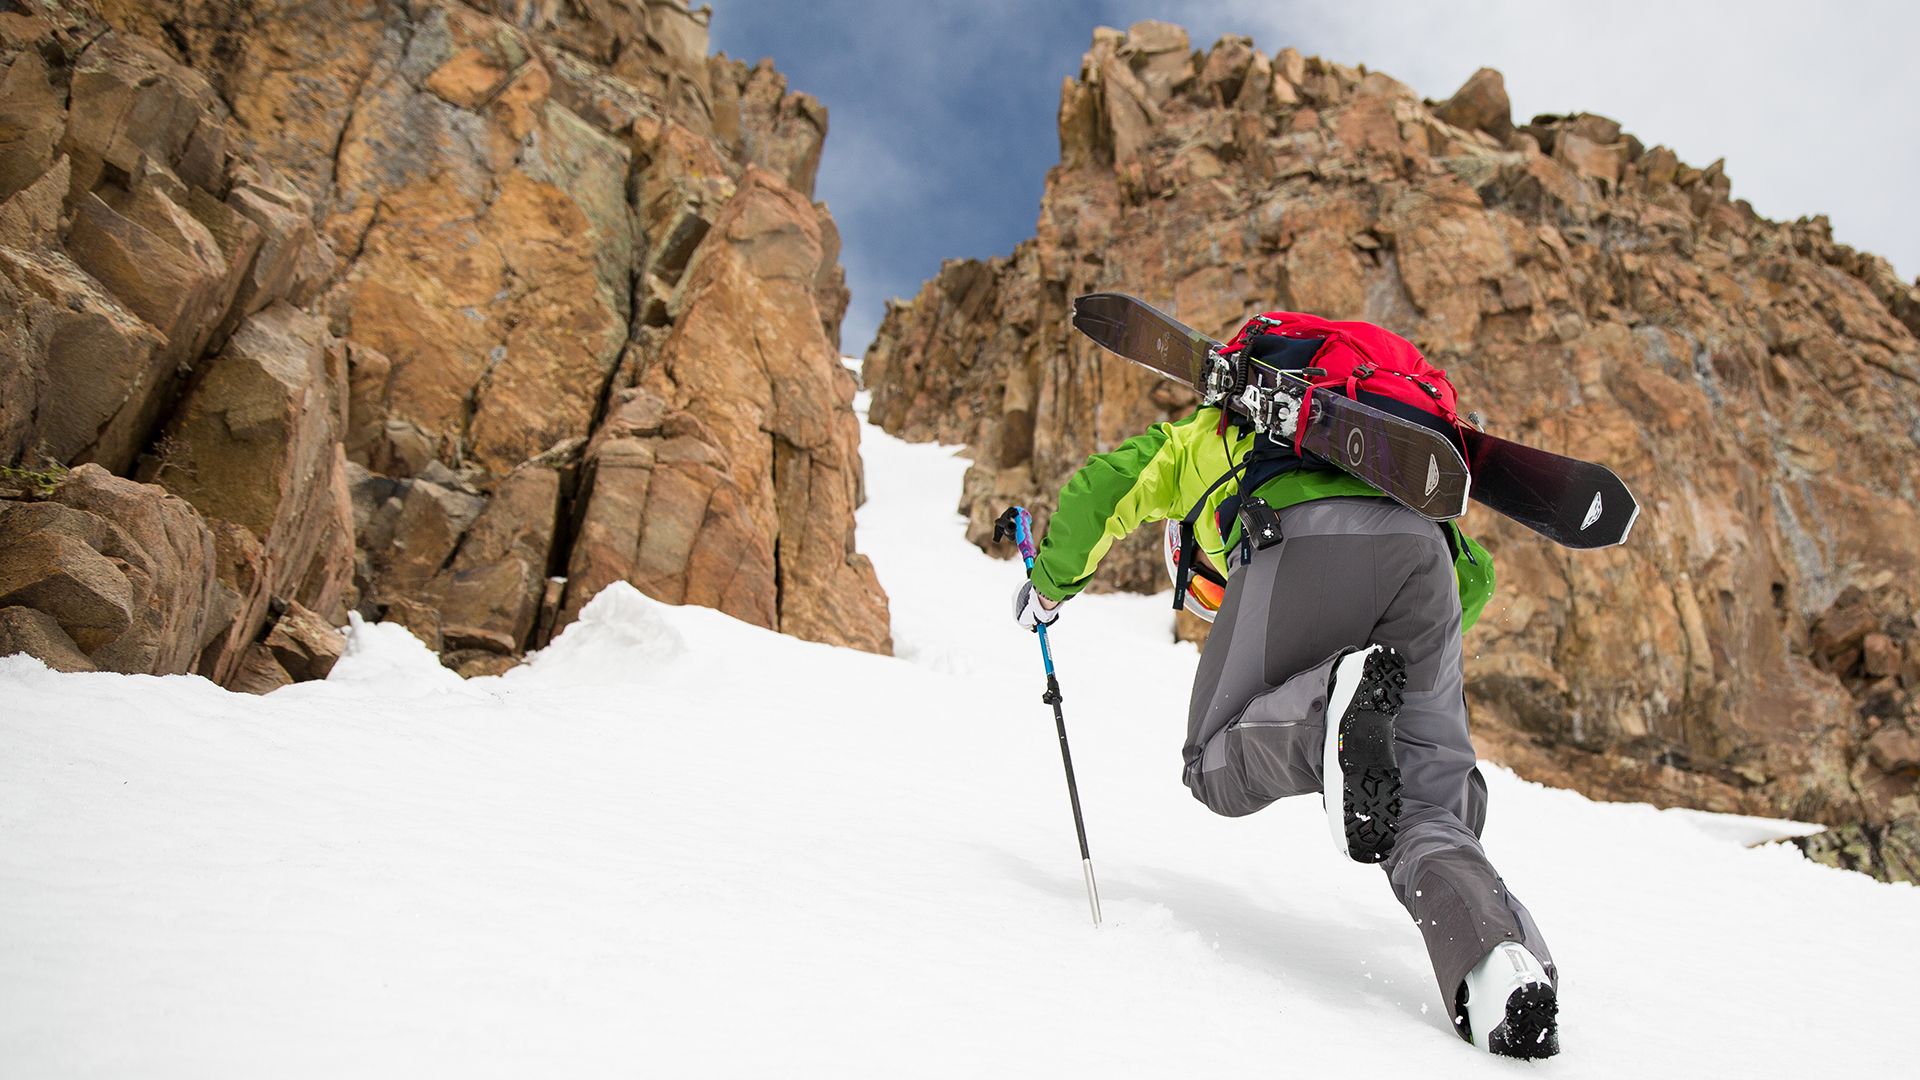 Ski Touring Tips for Beginner Backcountry Skiers